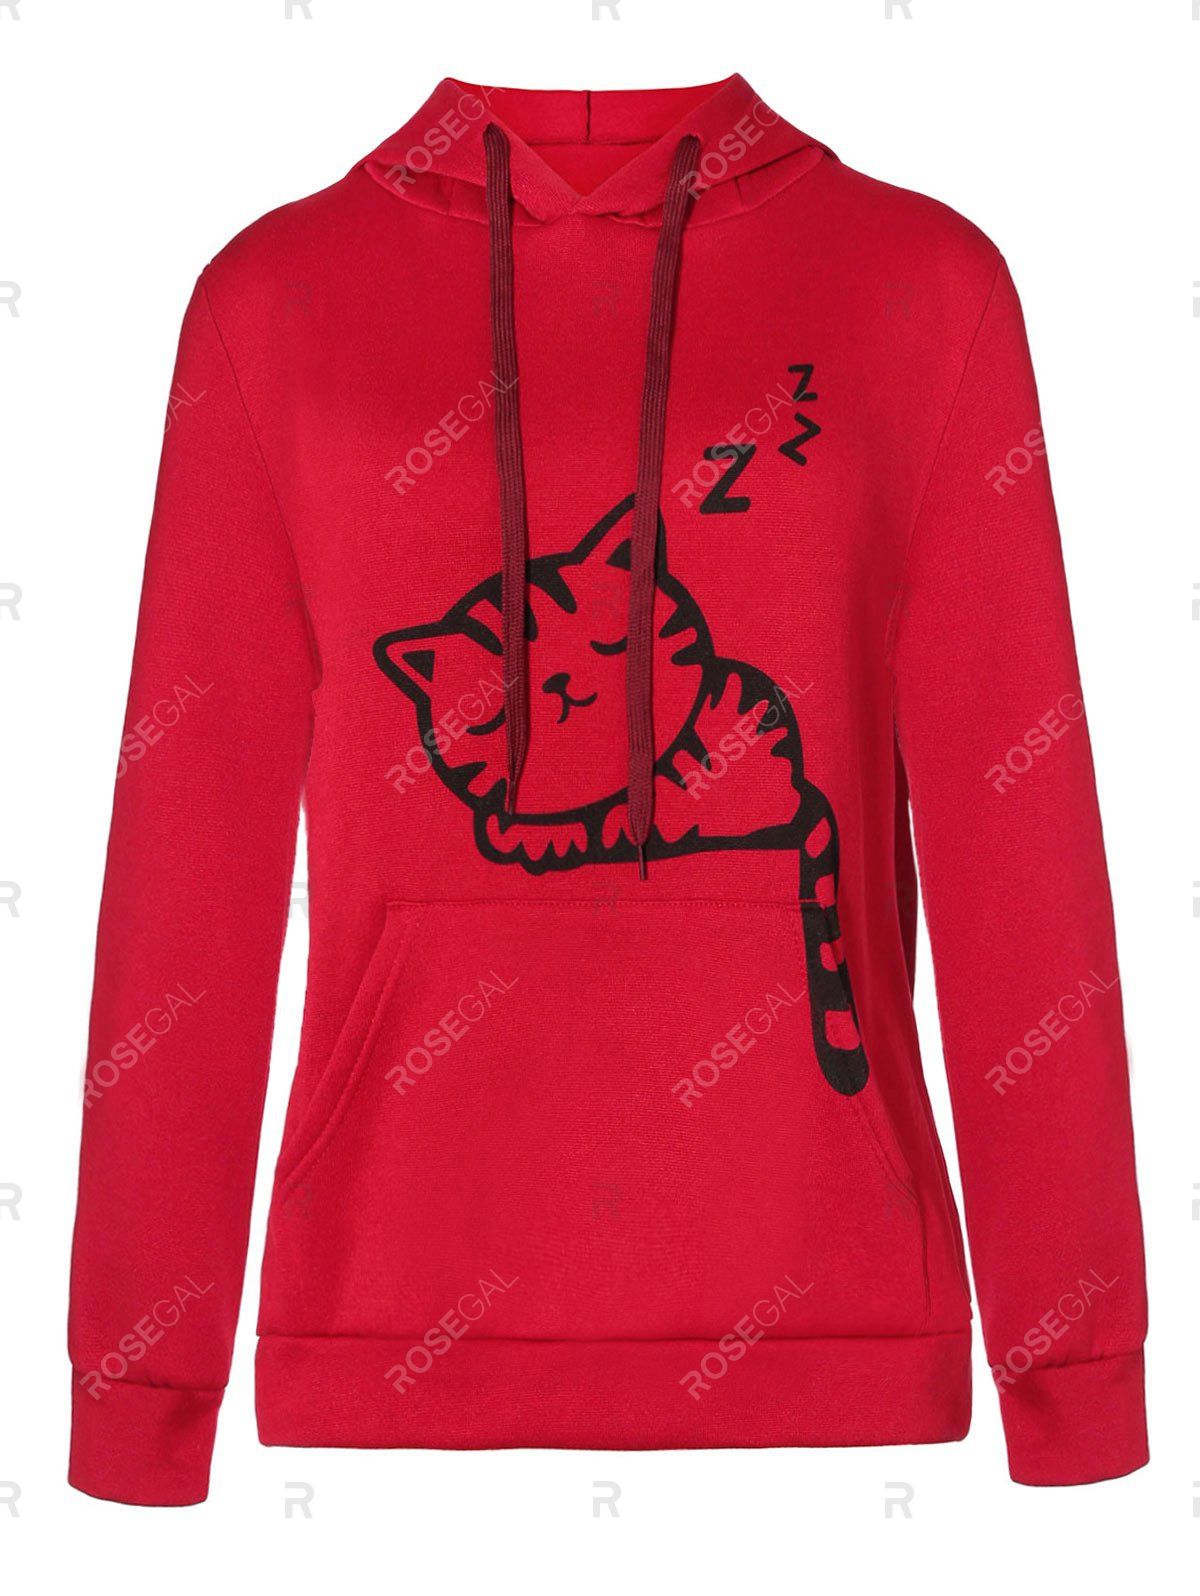 https://www.rosegal.com/sweatshirts-hoodies/kangaroo-pocket-cat-ear-hoodie-2403330.html?lkid=16127505